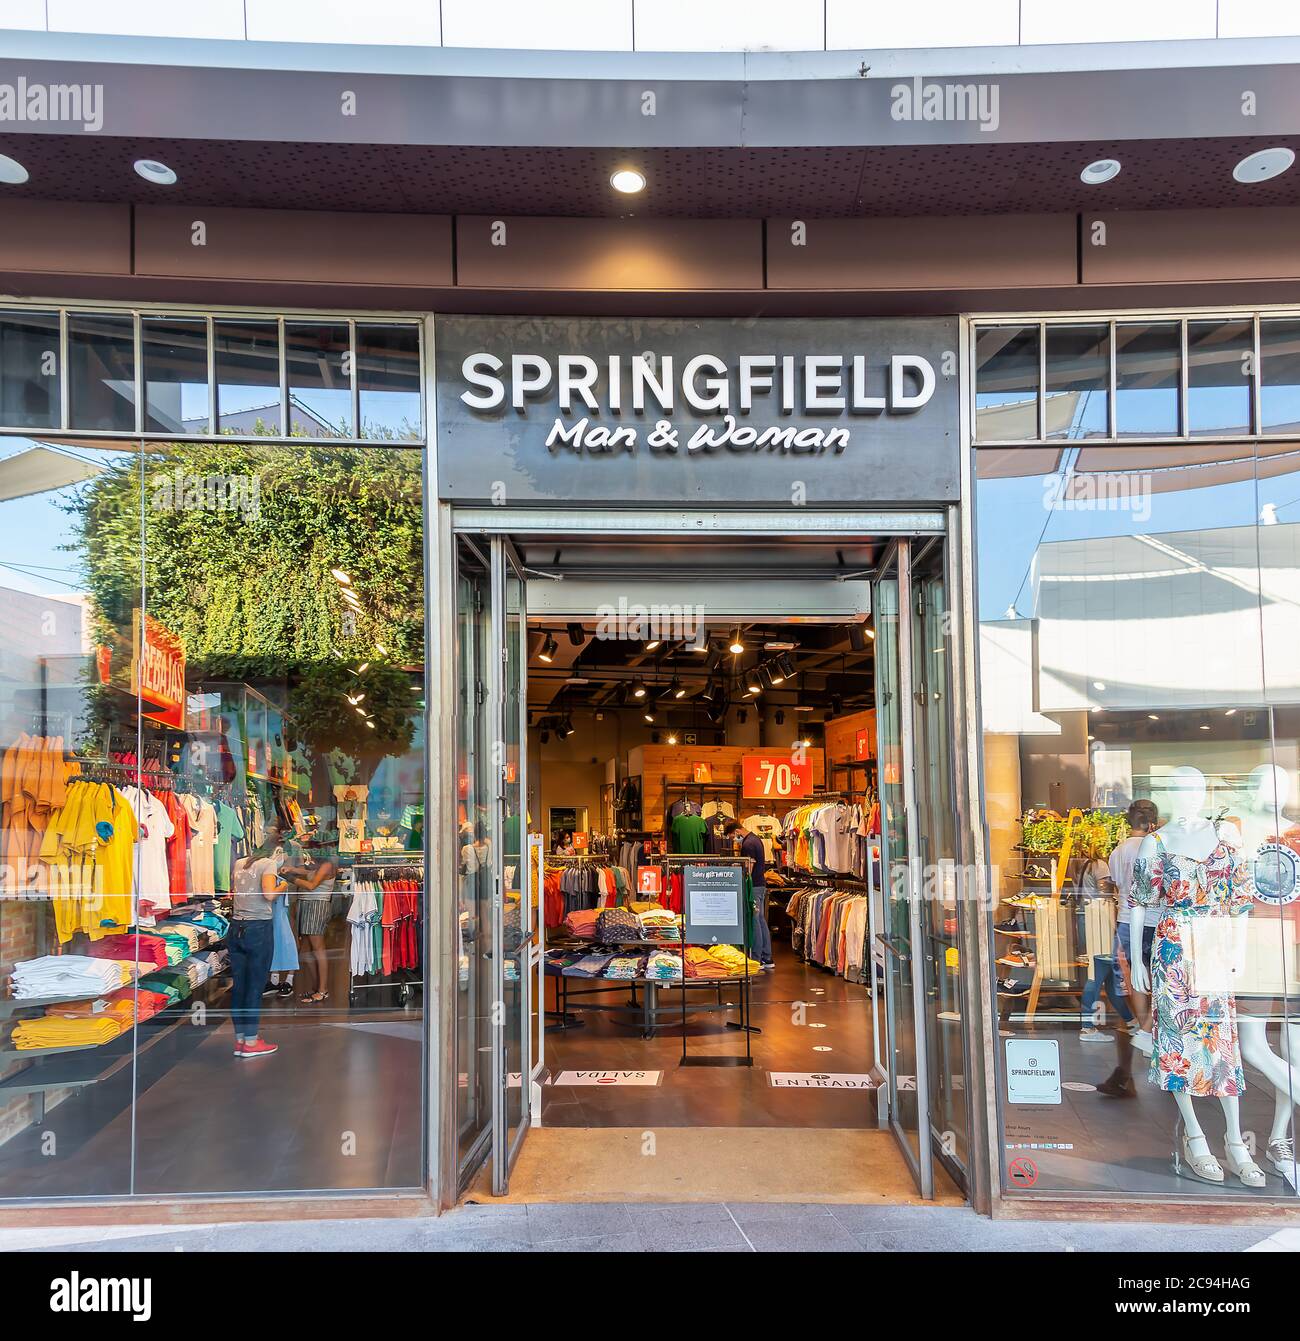 Tienda de springfield fotografías e imágenes de alta resolución - Alamy